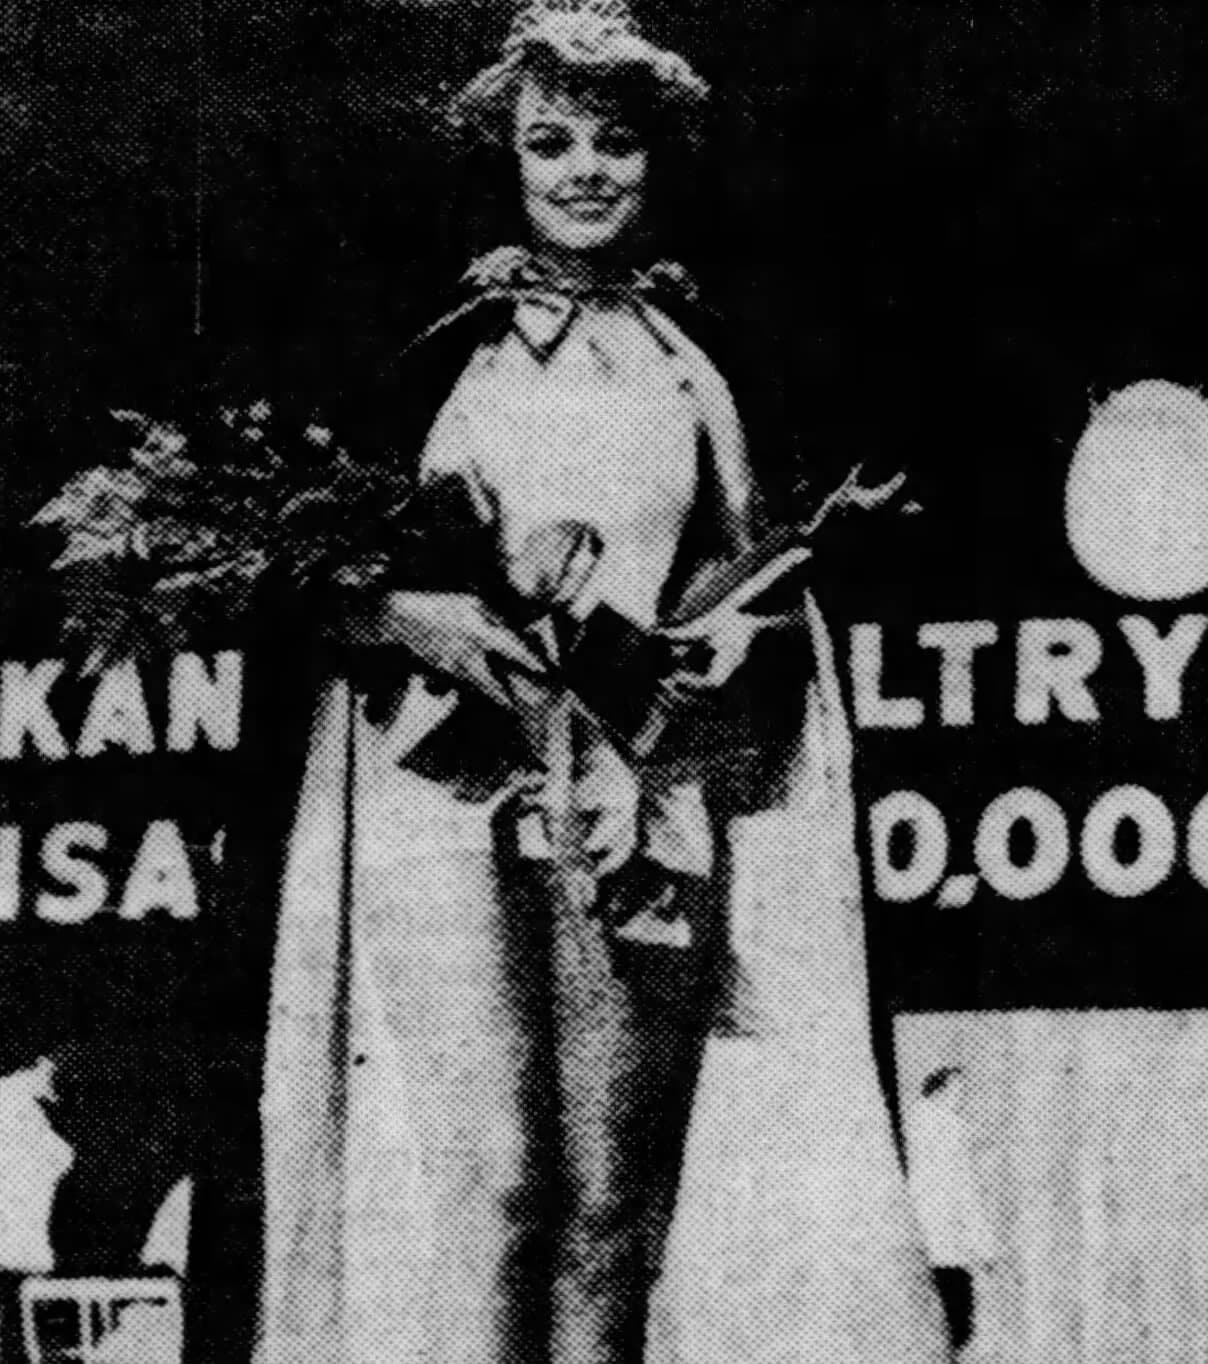 Cheryl Bechtelheimer is crowned Miss Arkansas USA 1963